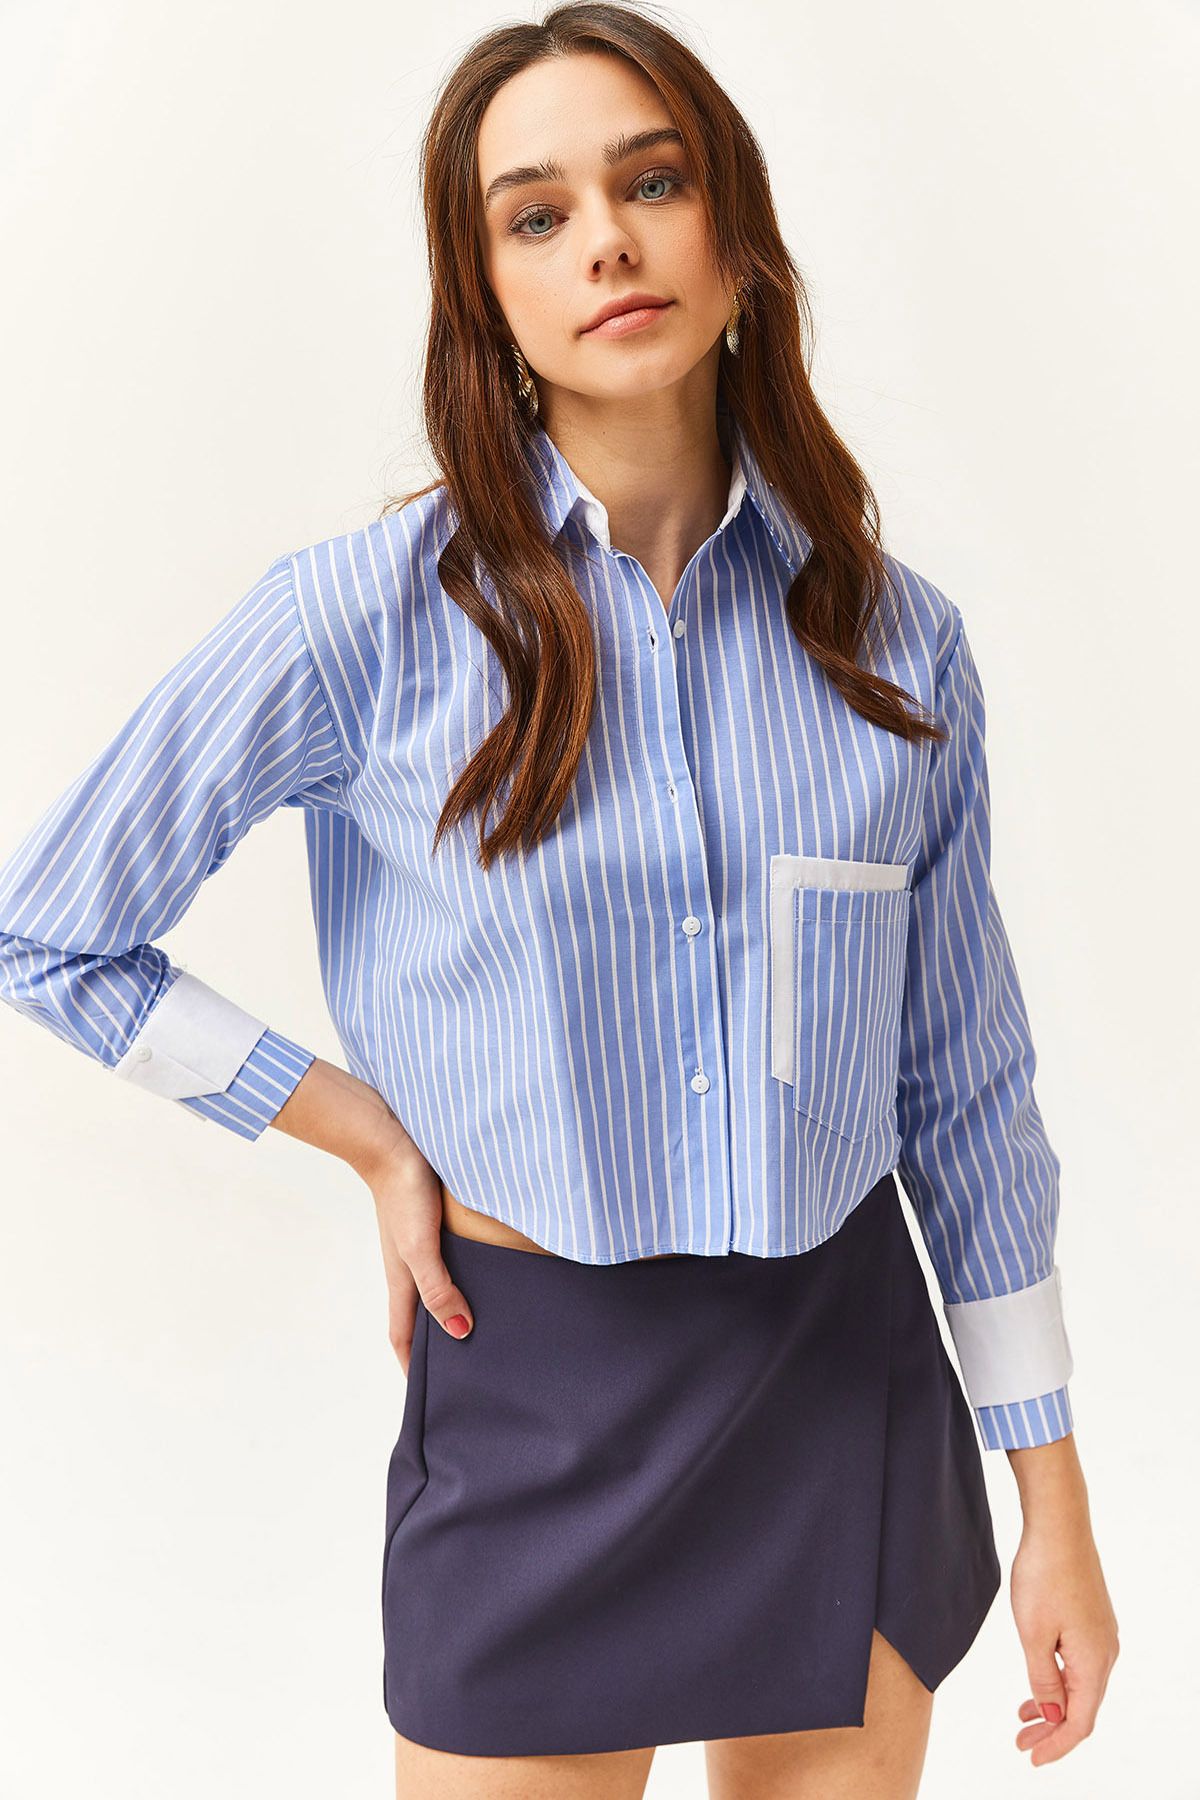 Olalook Kadın Mavi Beyaz Cep ve Manşet Detaylı Çizgili Crop Gömlek GML-19001169